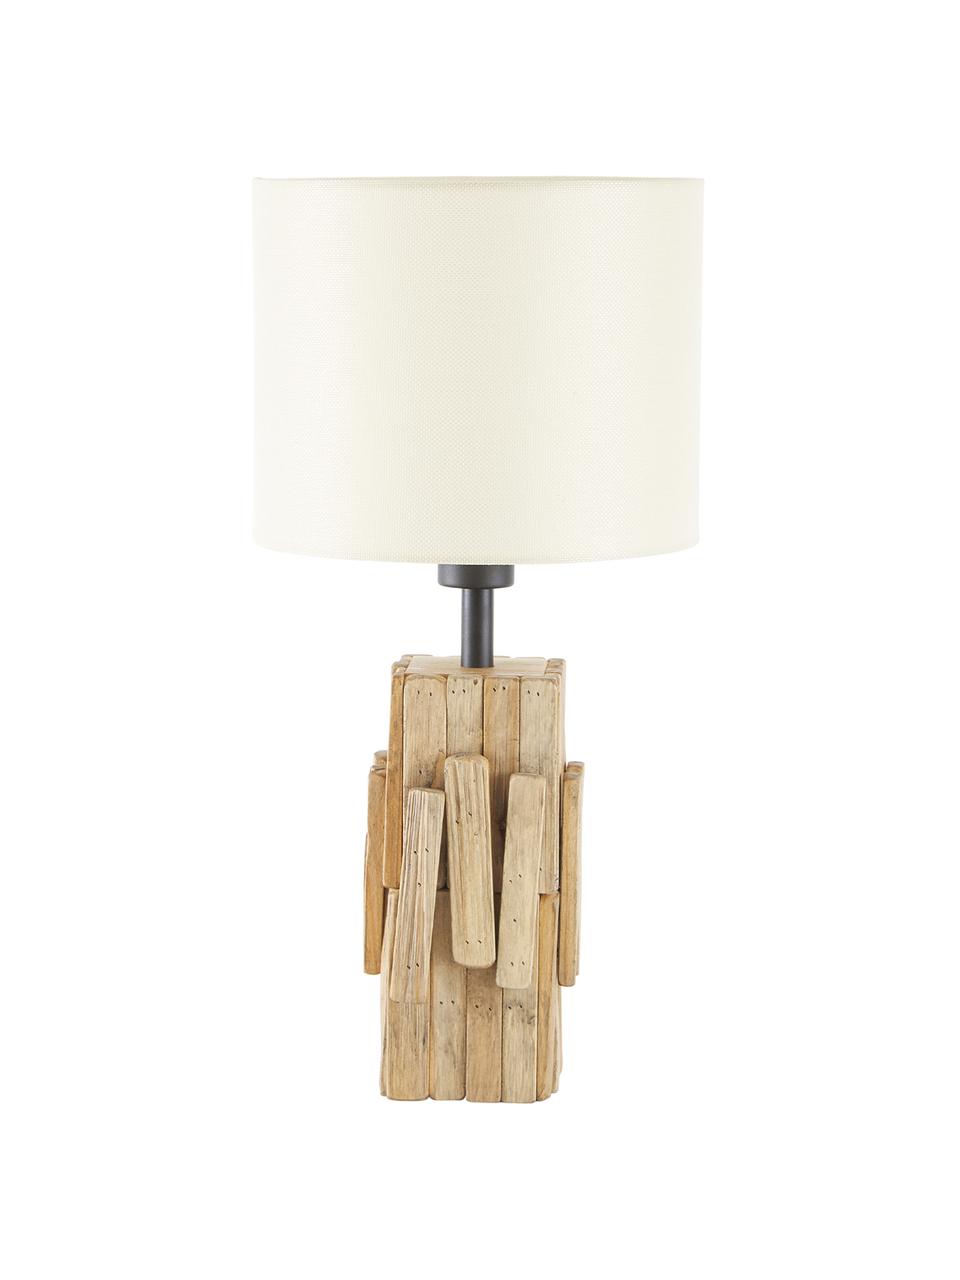 Stolní lampa s dřevěnou podstavou Portishead, Hnědá, bílá